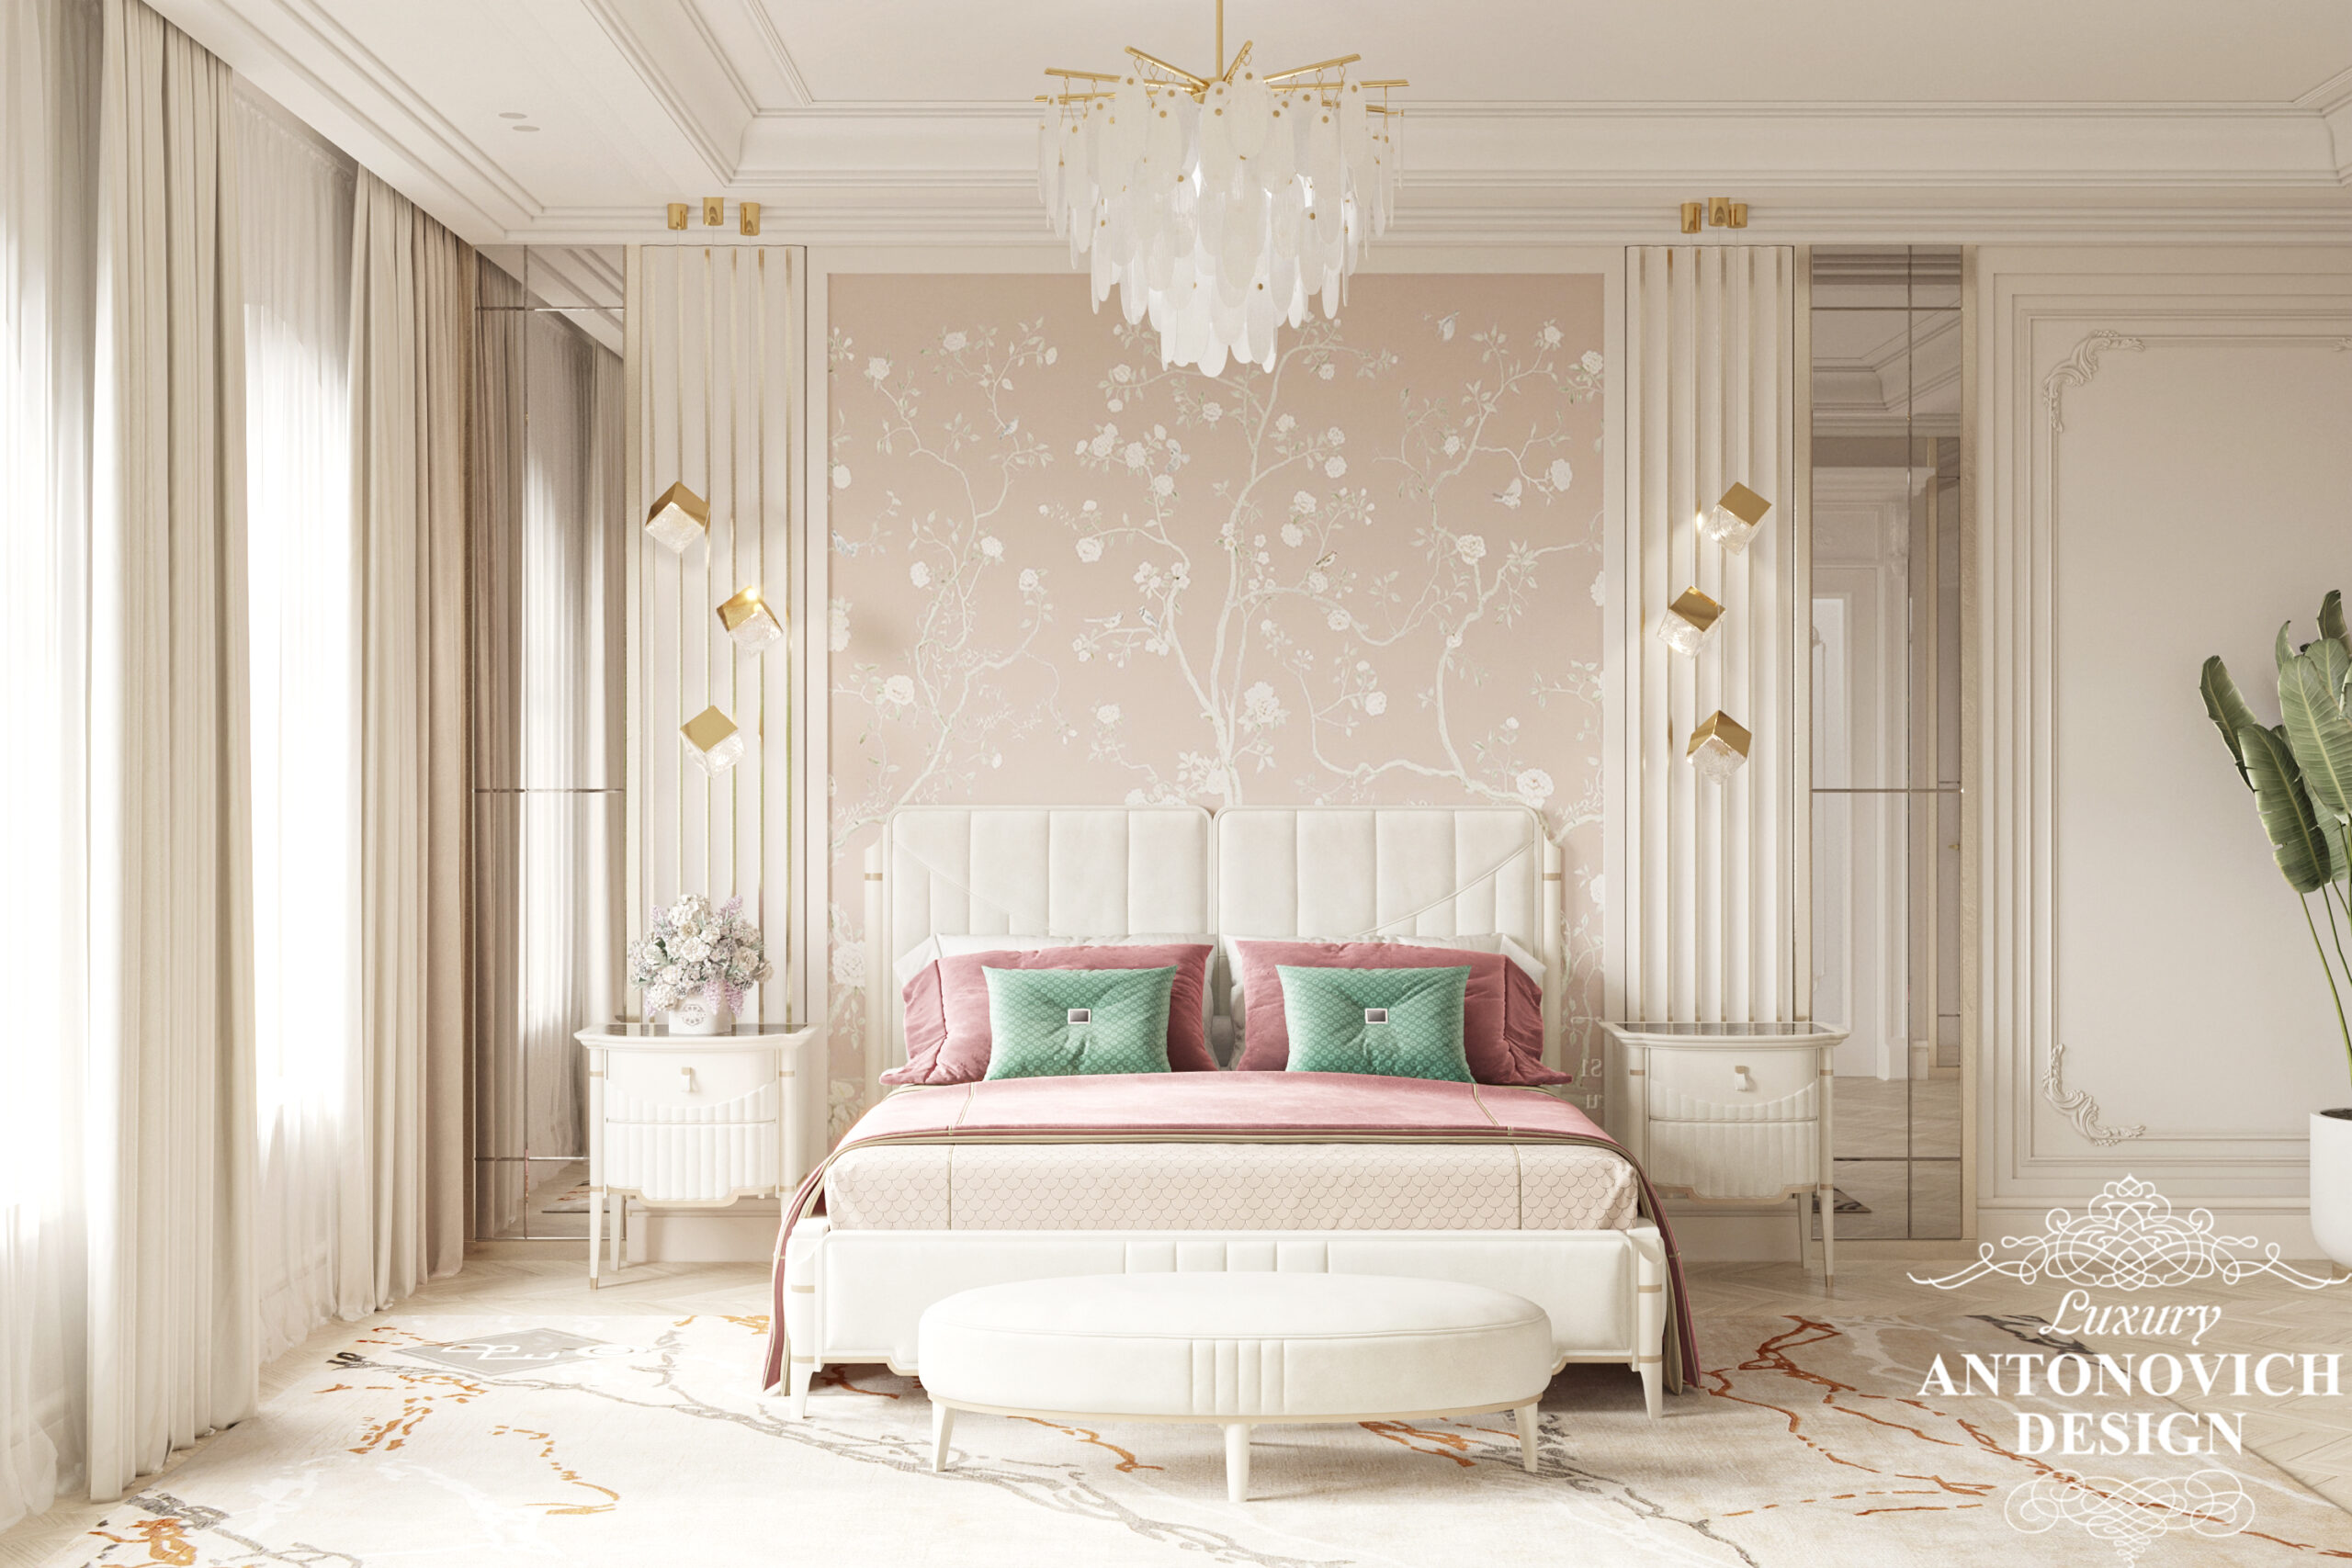 Нежный дизайн женской спальни с оригинальными светильниками и красивой настенной фреской